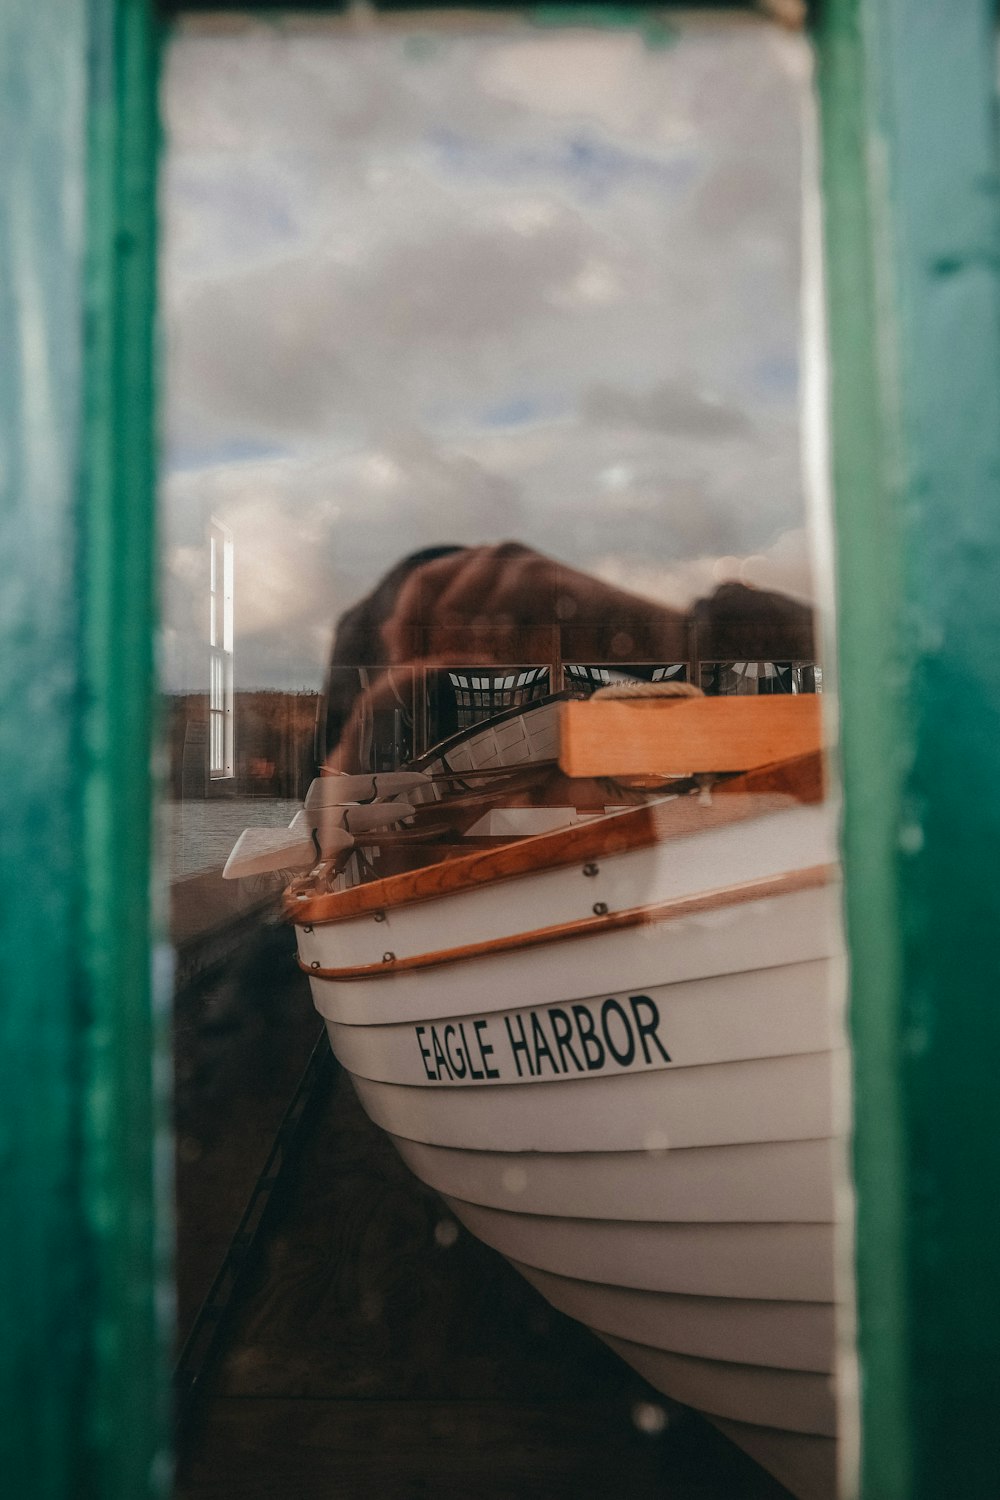 Eine Reflexion eines Bootes in einem Fenster